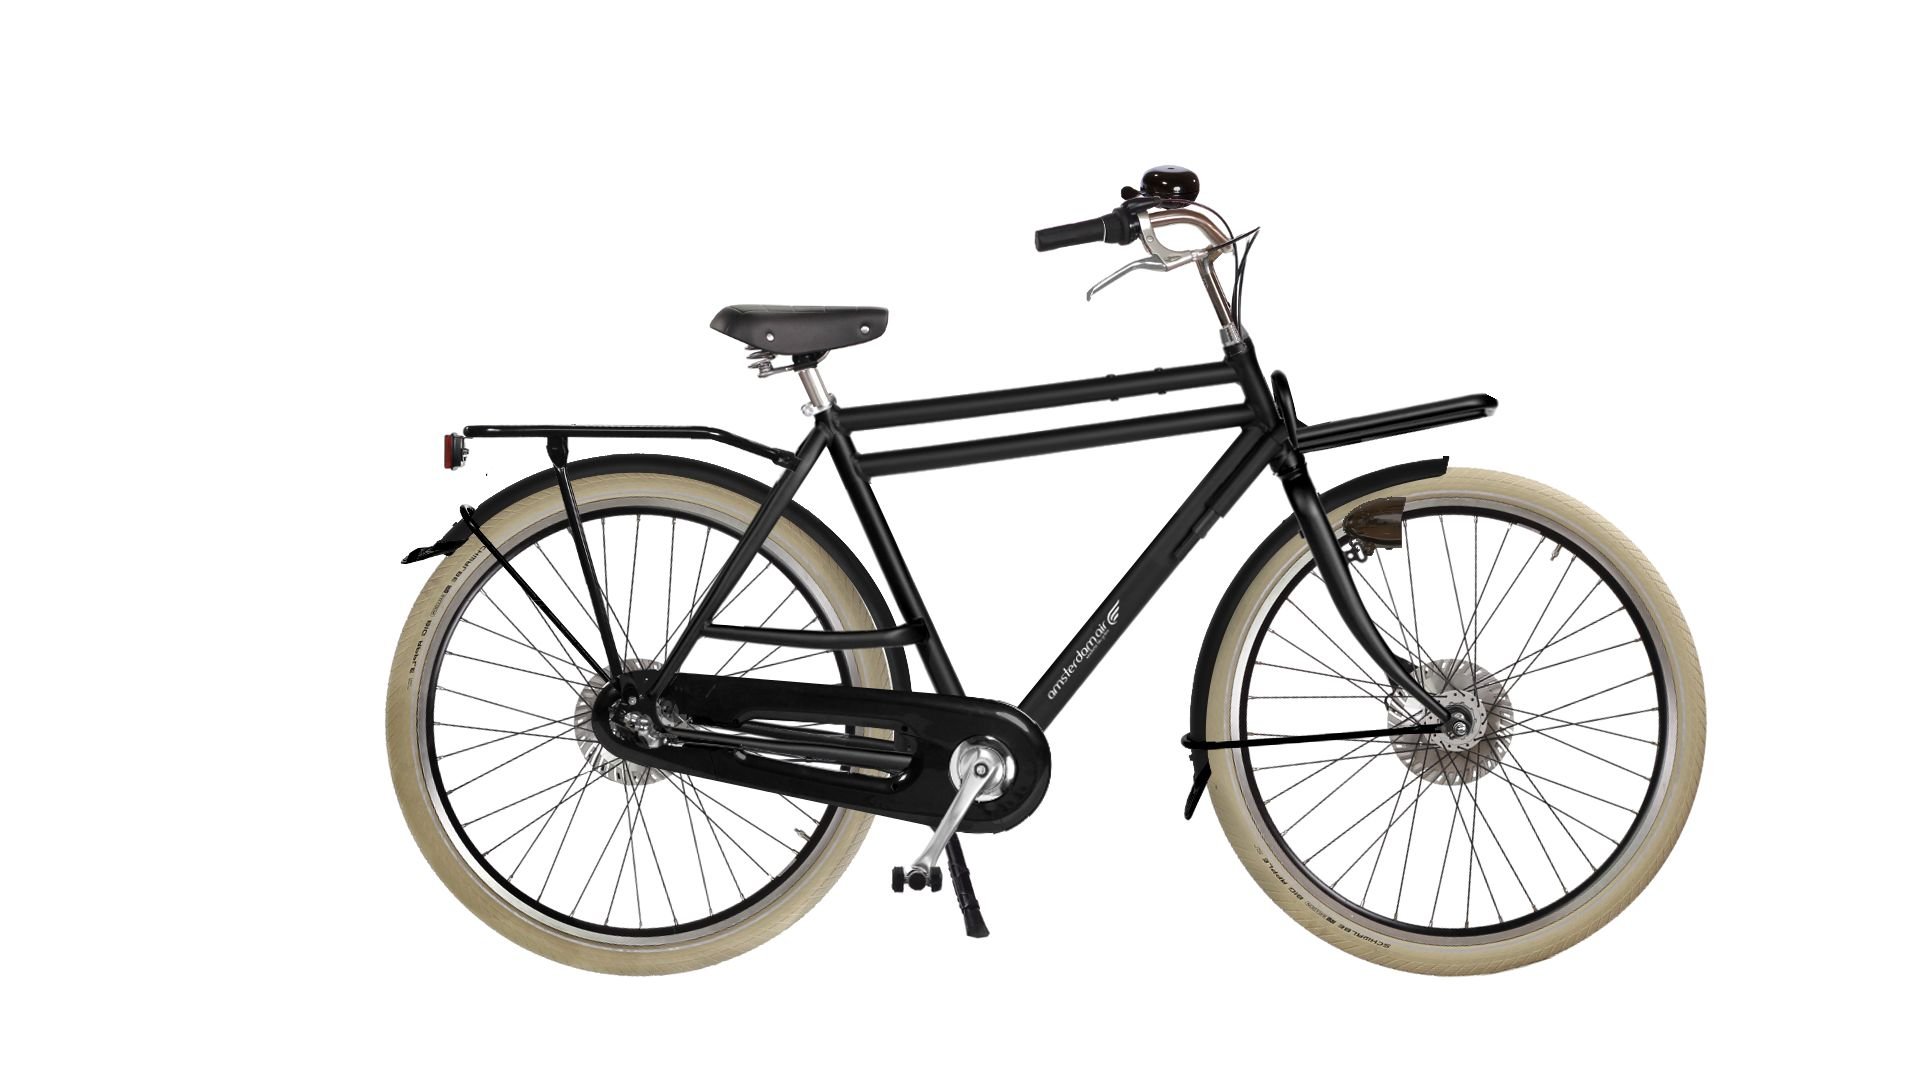 Configurateur du vélo Double Dutch High avec porte-bagage avant amovible